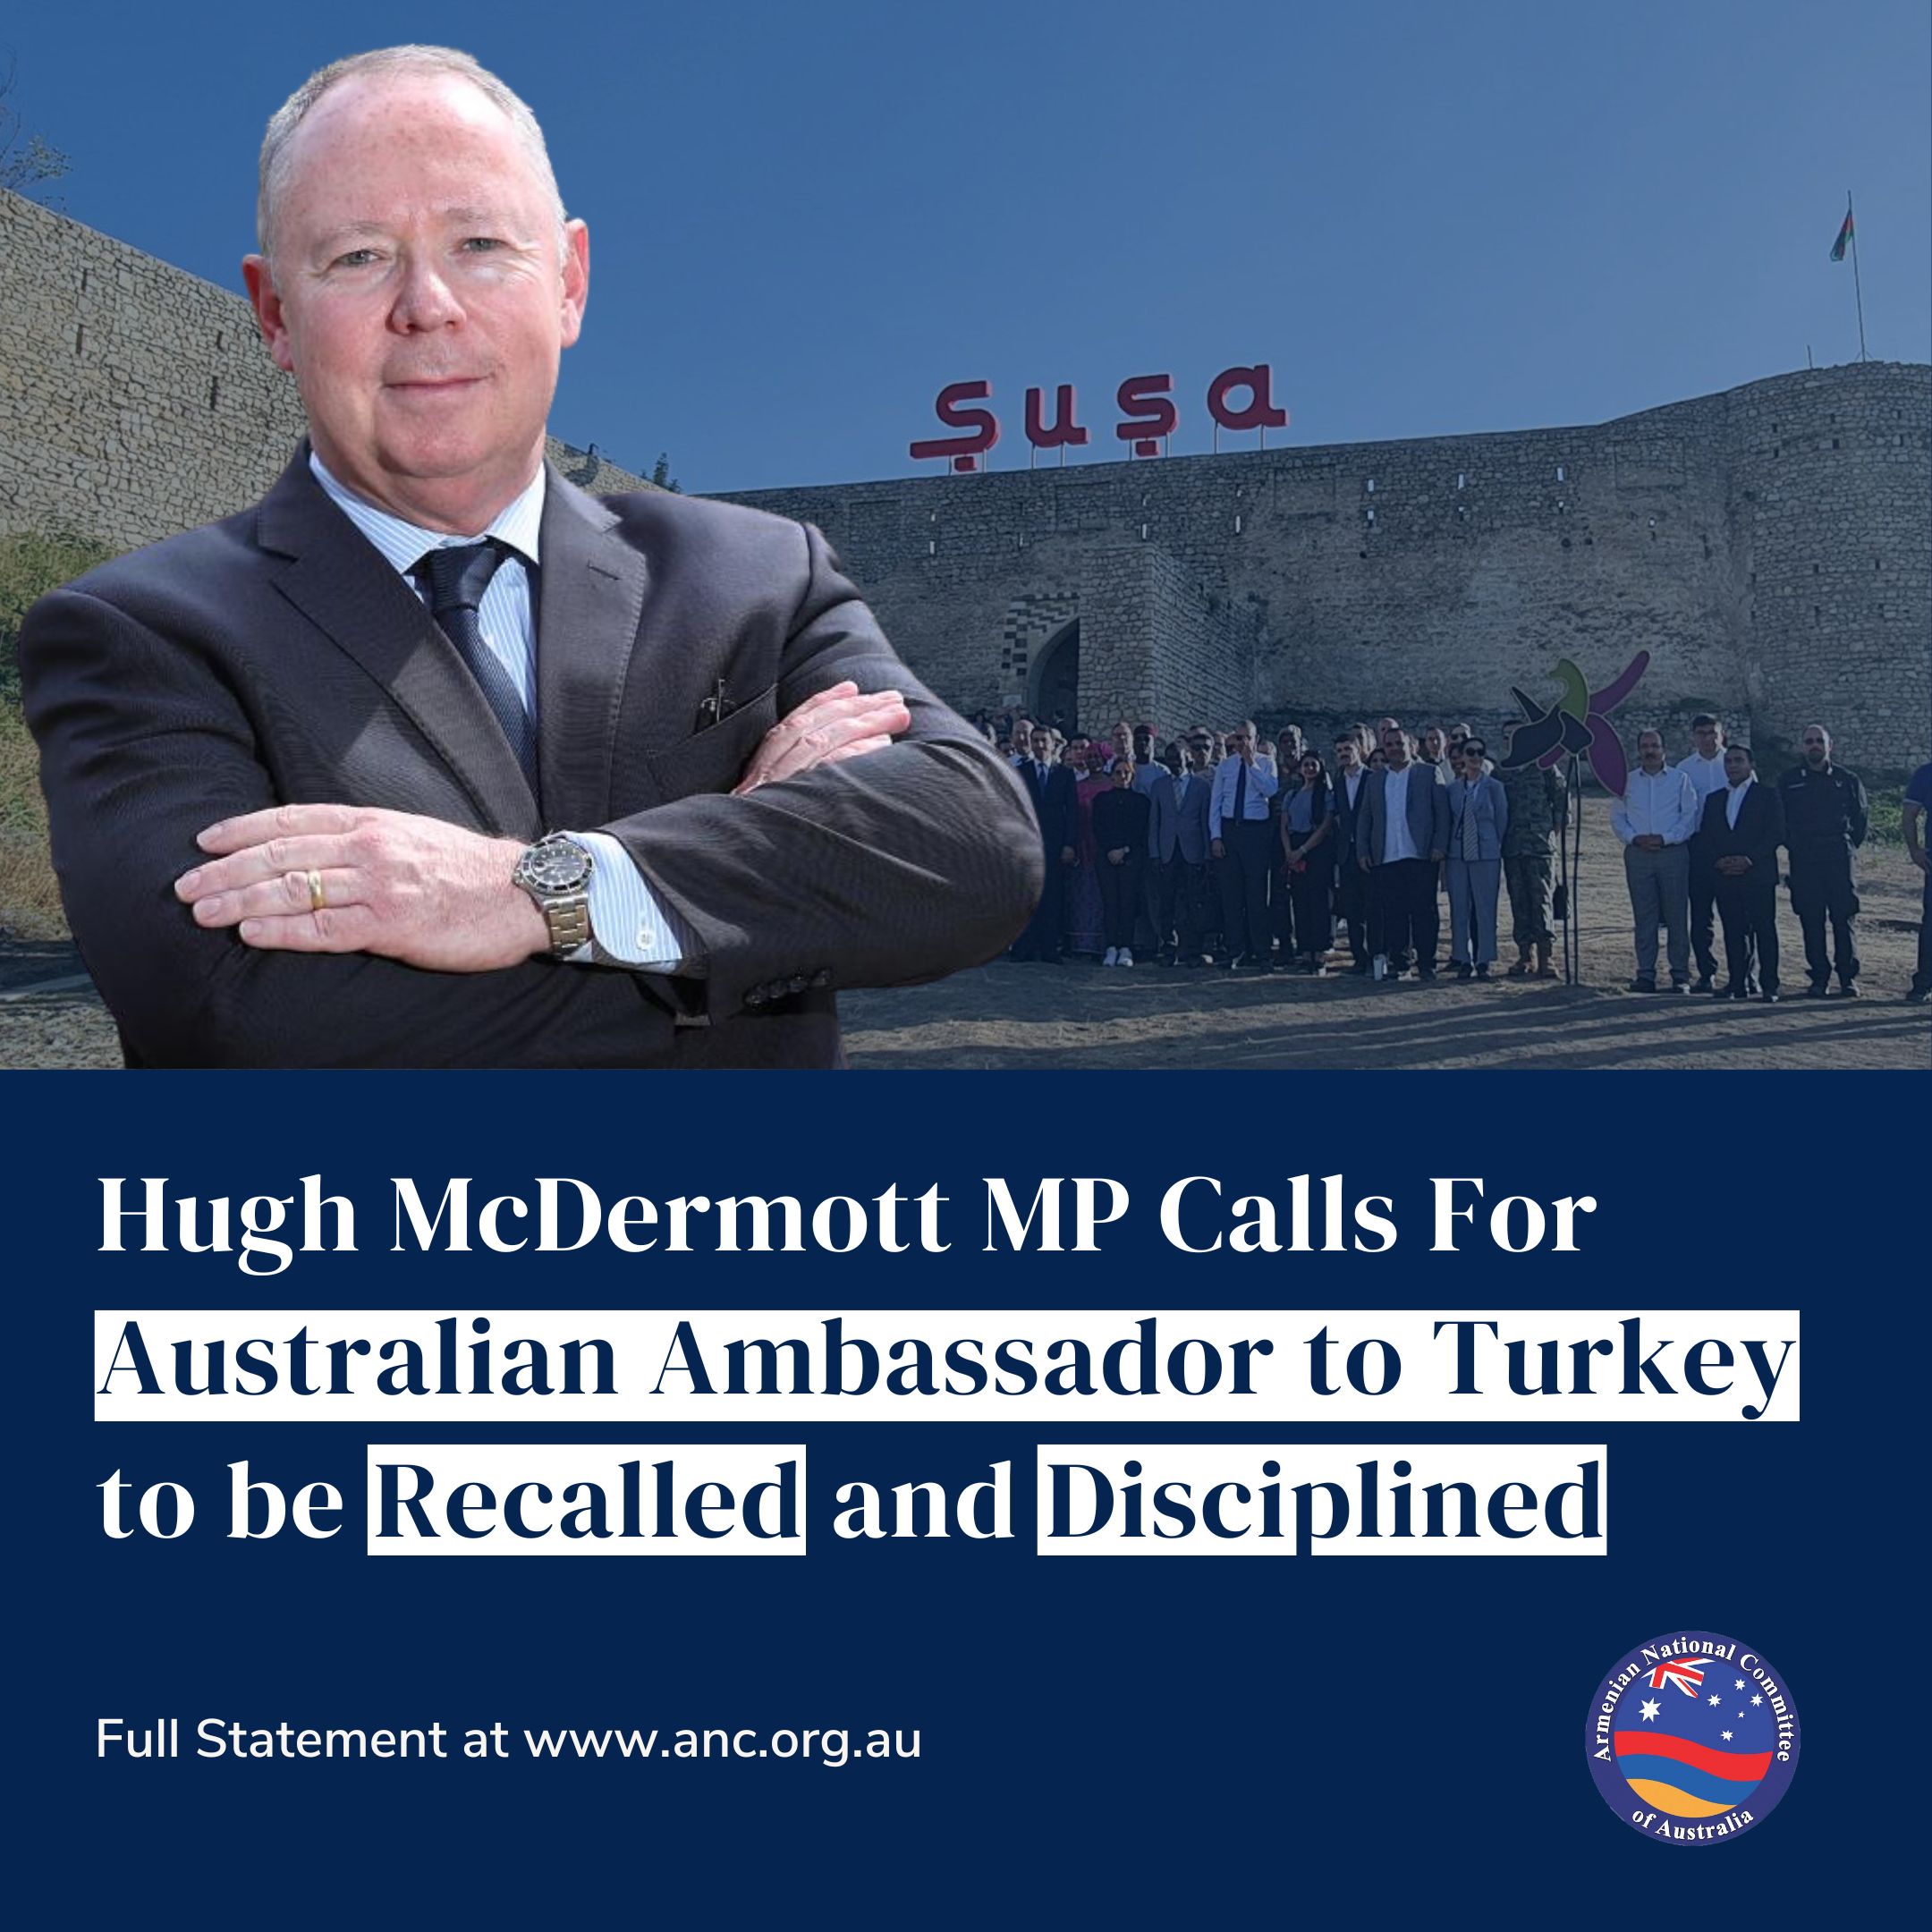 Temsilci Hugh McDermott, Avustralya’nın Türkiye büyükelçisinin geri çekilmesi ve el konulması çağrısında bulundu – Basın Açıklamaları – Haberler |